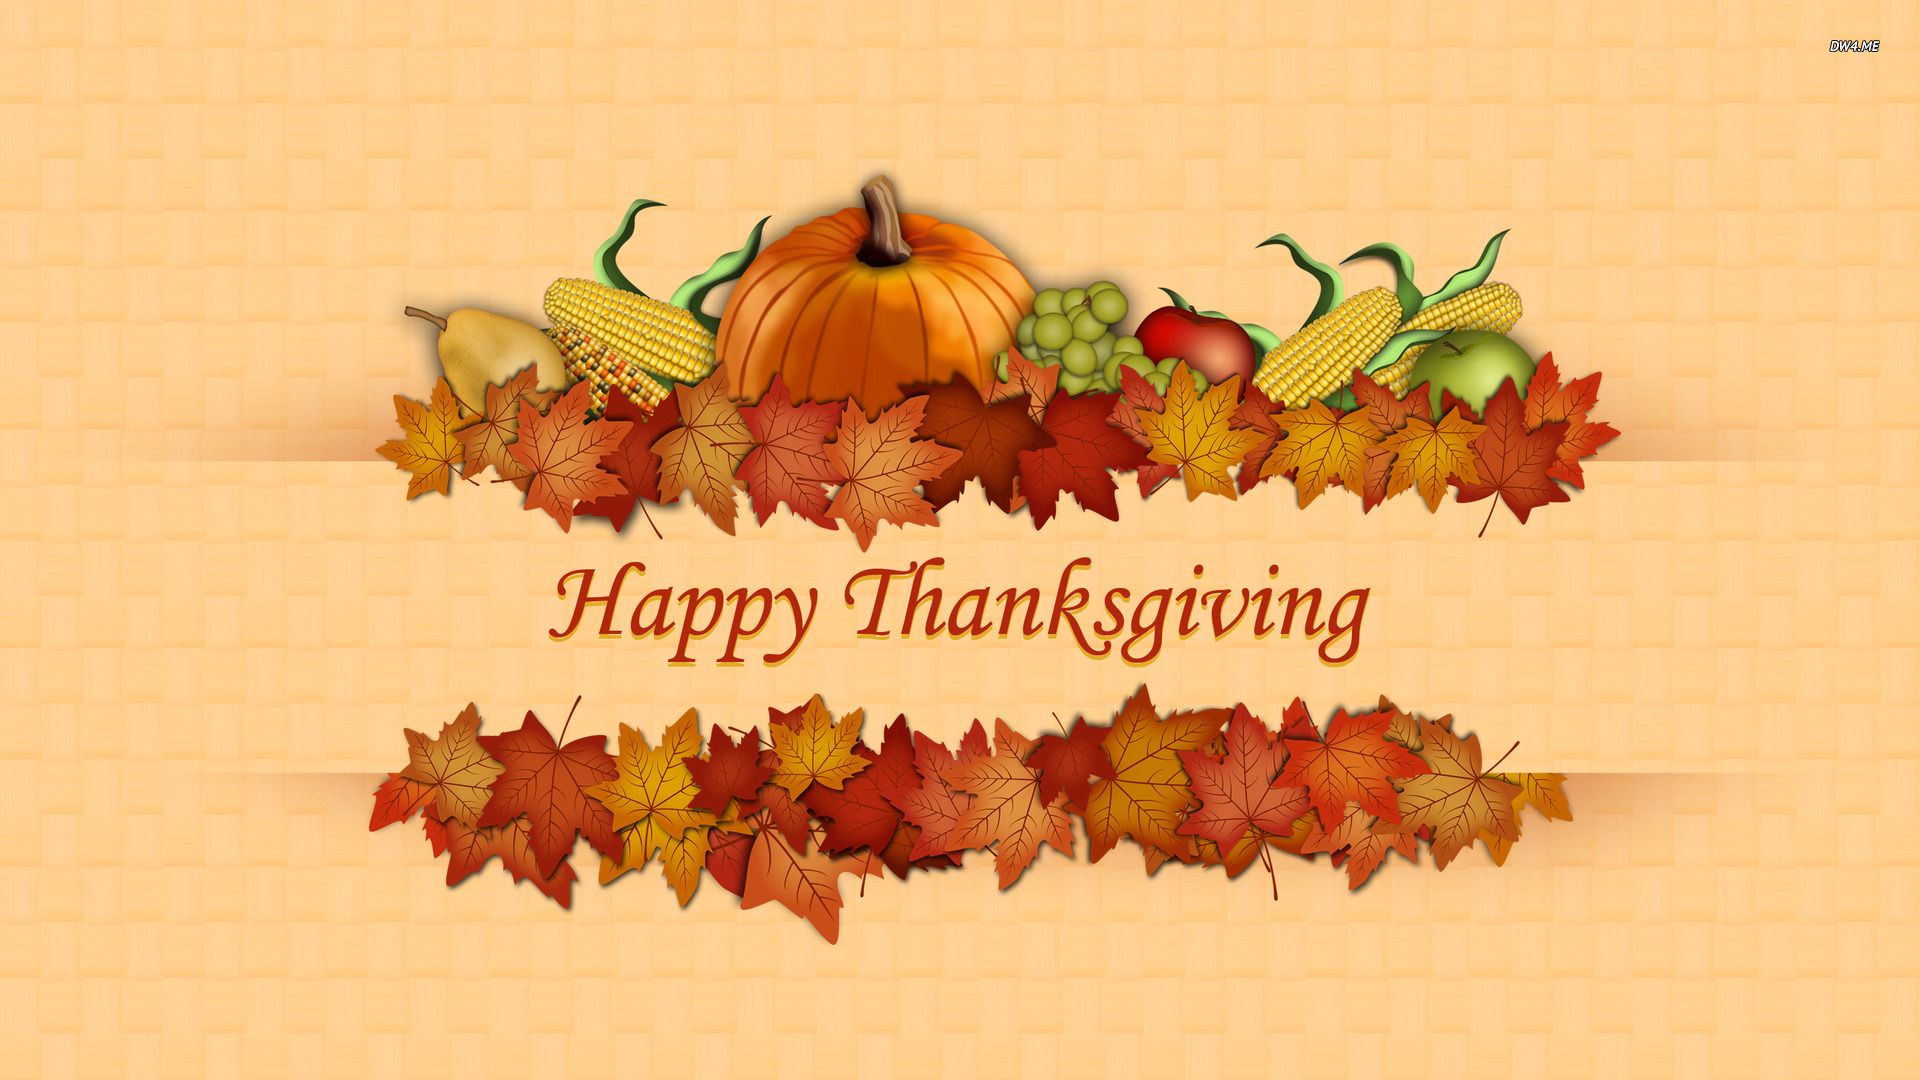 Thanksgiving desktop wallpaper free